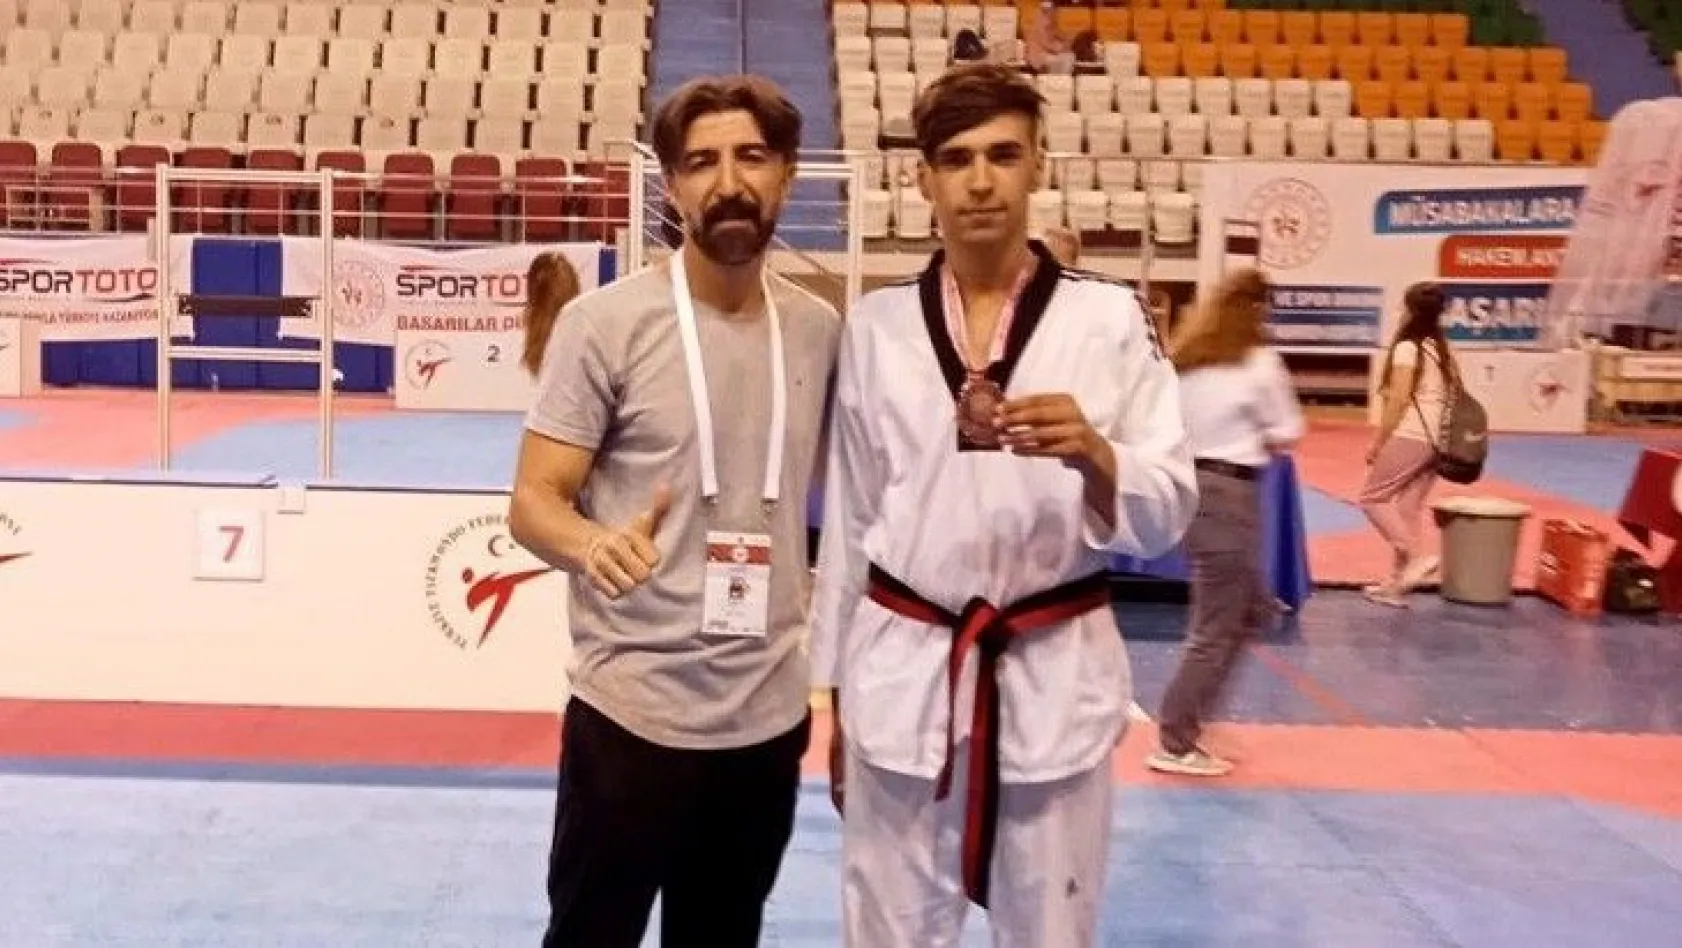 Elazığlı sporcu Türkiye 3'üncüsü oldu